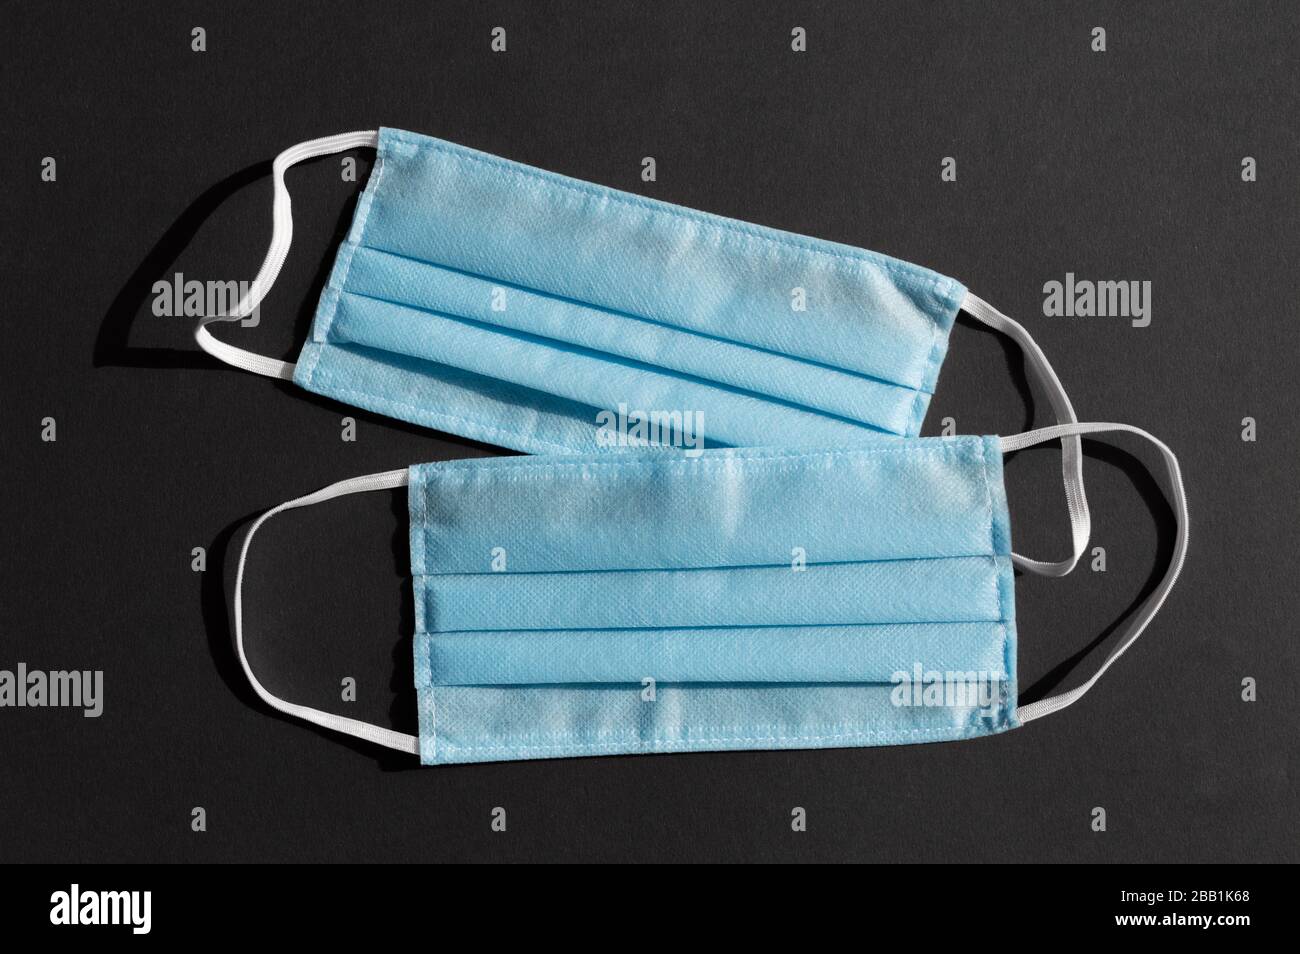 Deux masques médicaux jetables bleu clair sur fond noir foncé contre le virus covid-2019. Concept de soins de santé, quarantaine, arrêt du coronavirus Banque D'Images